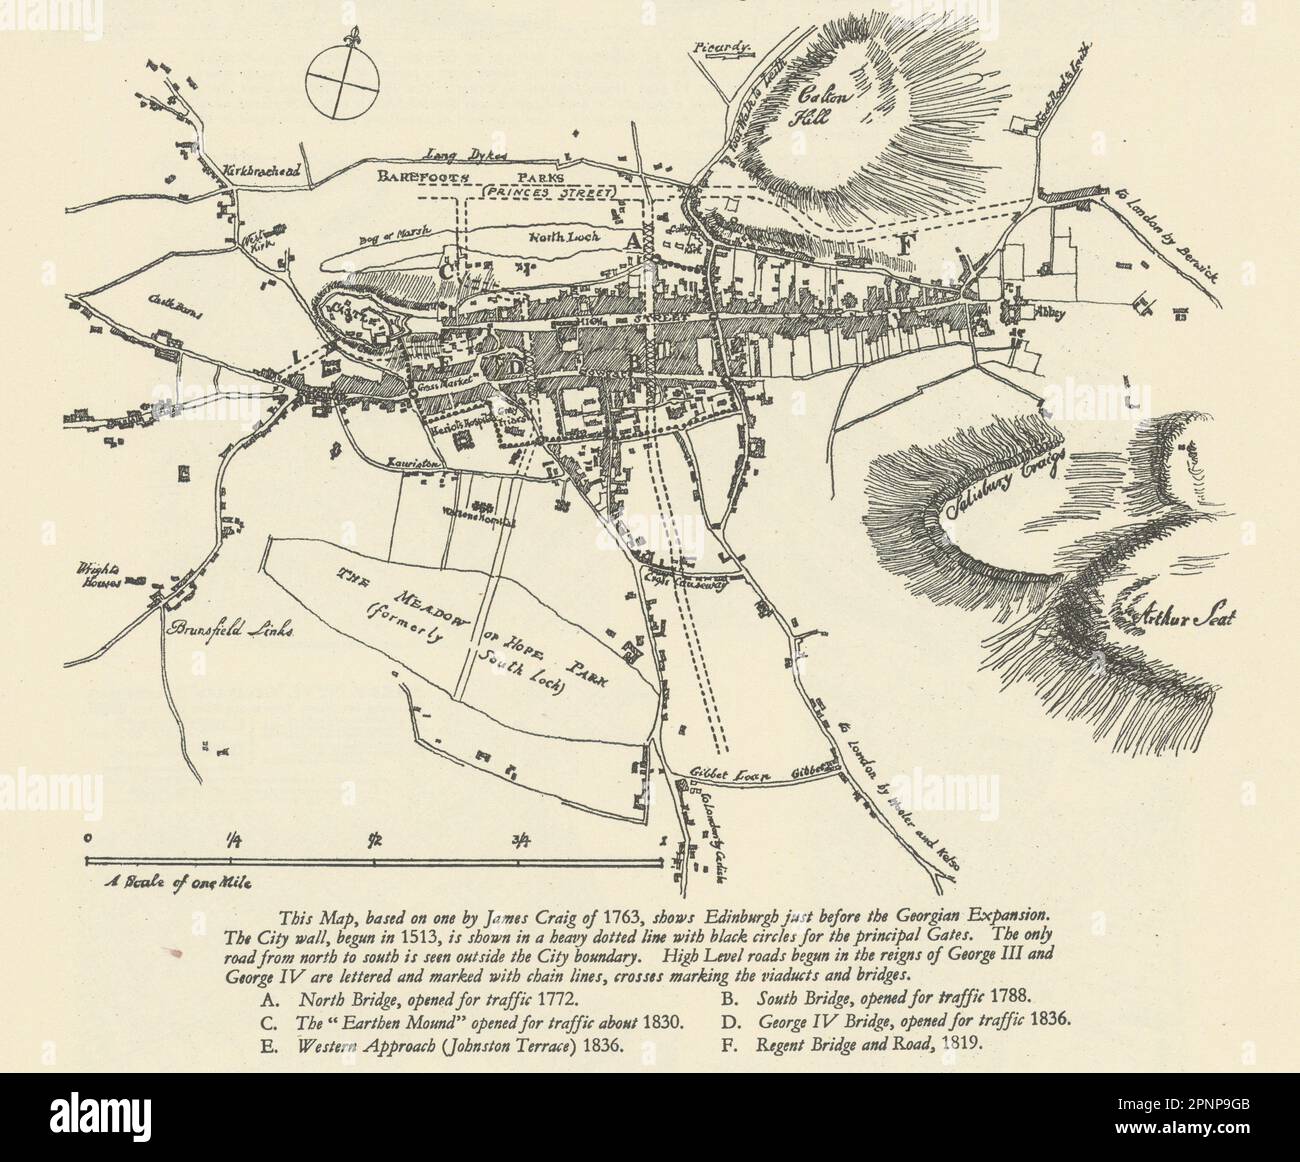 Skizzieren Sie eine Karte des prägeorgianischen Edinburgh nach James Craigs 1763 Karte 1949 Jahre alt Stockfoto